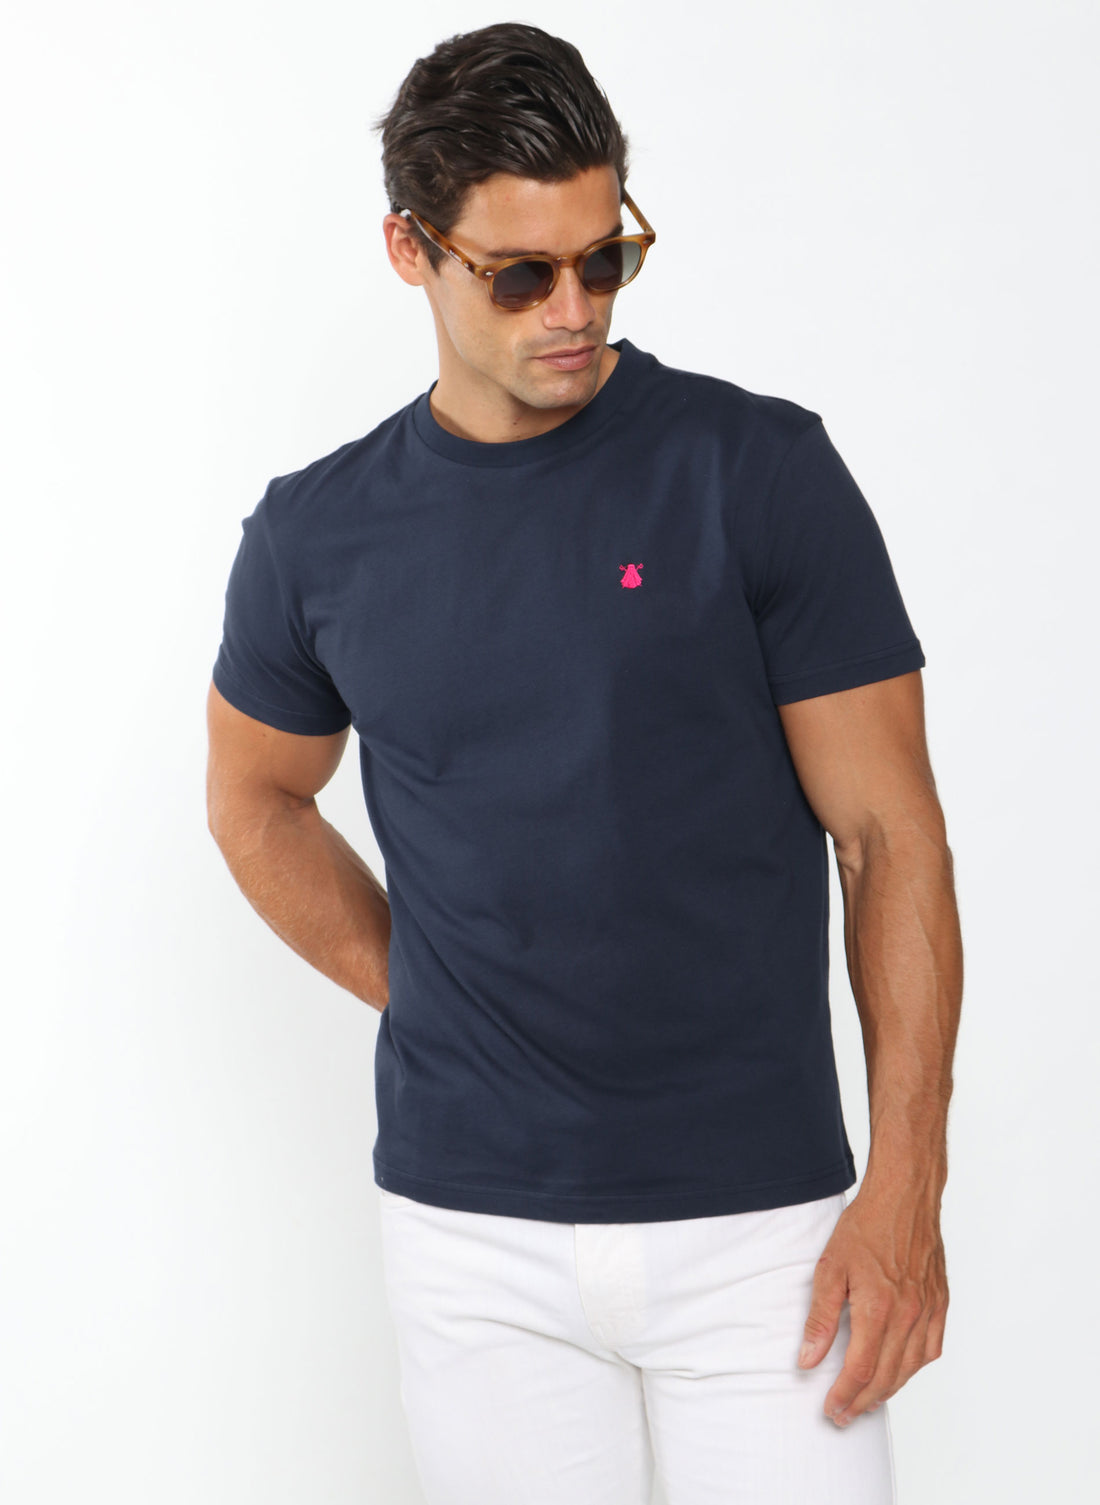 T-shirt teint en pièce bleu marine pour hommes